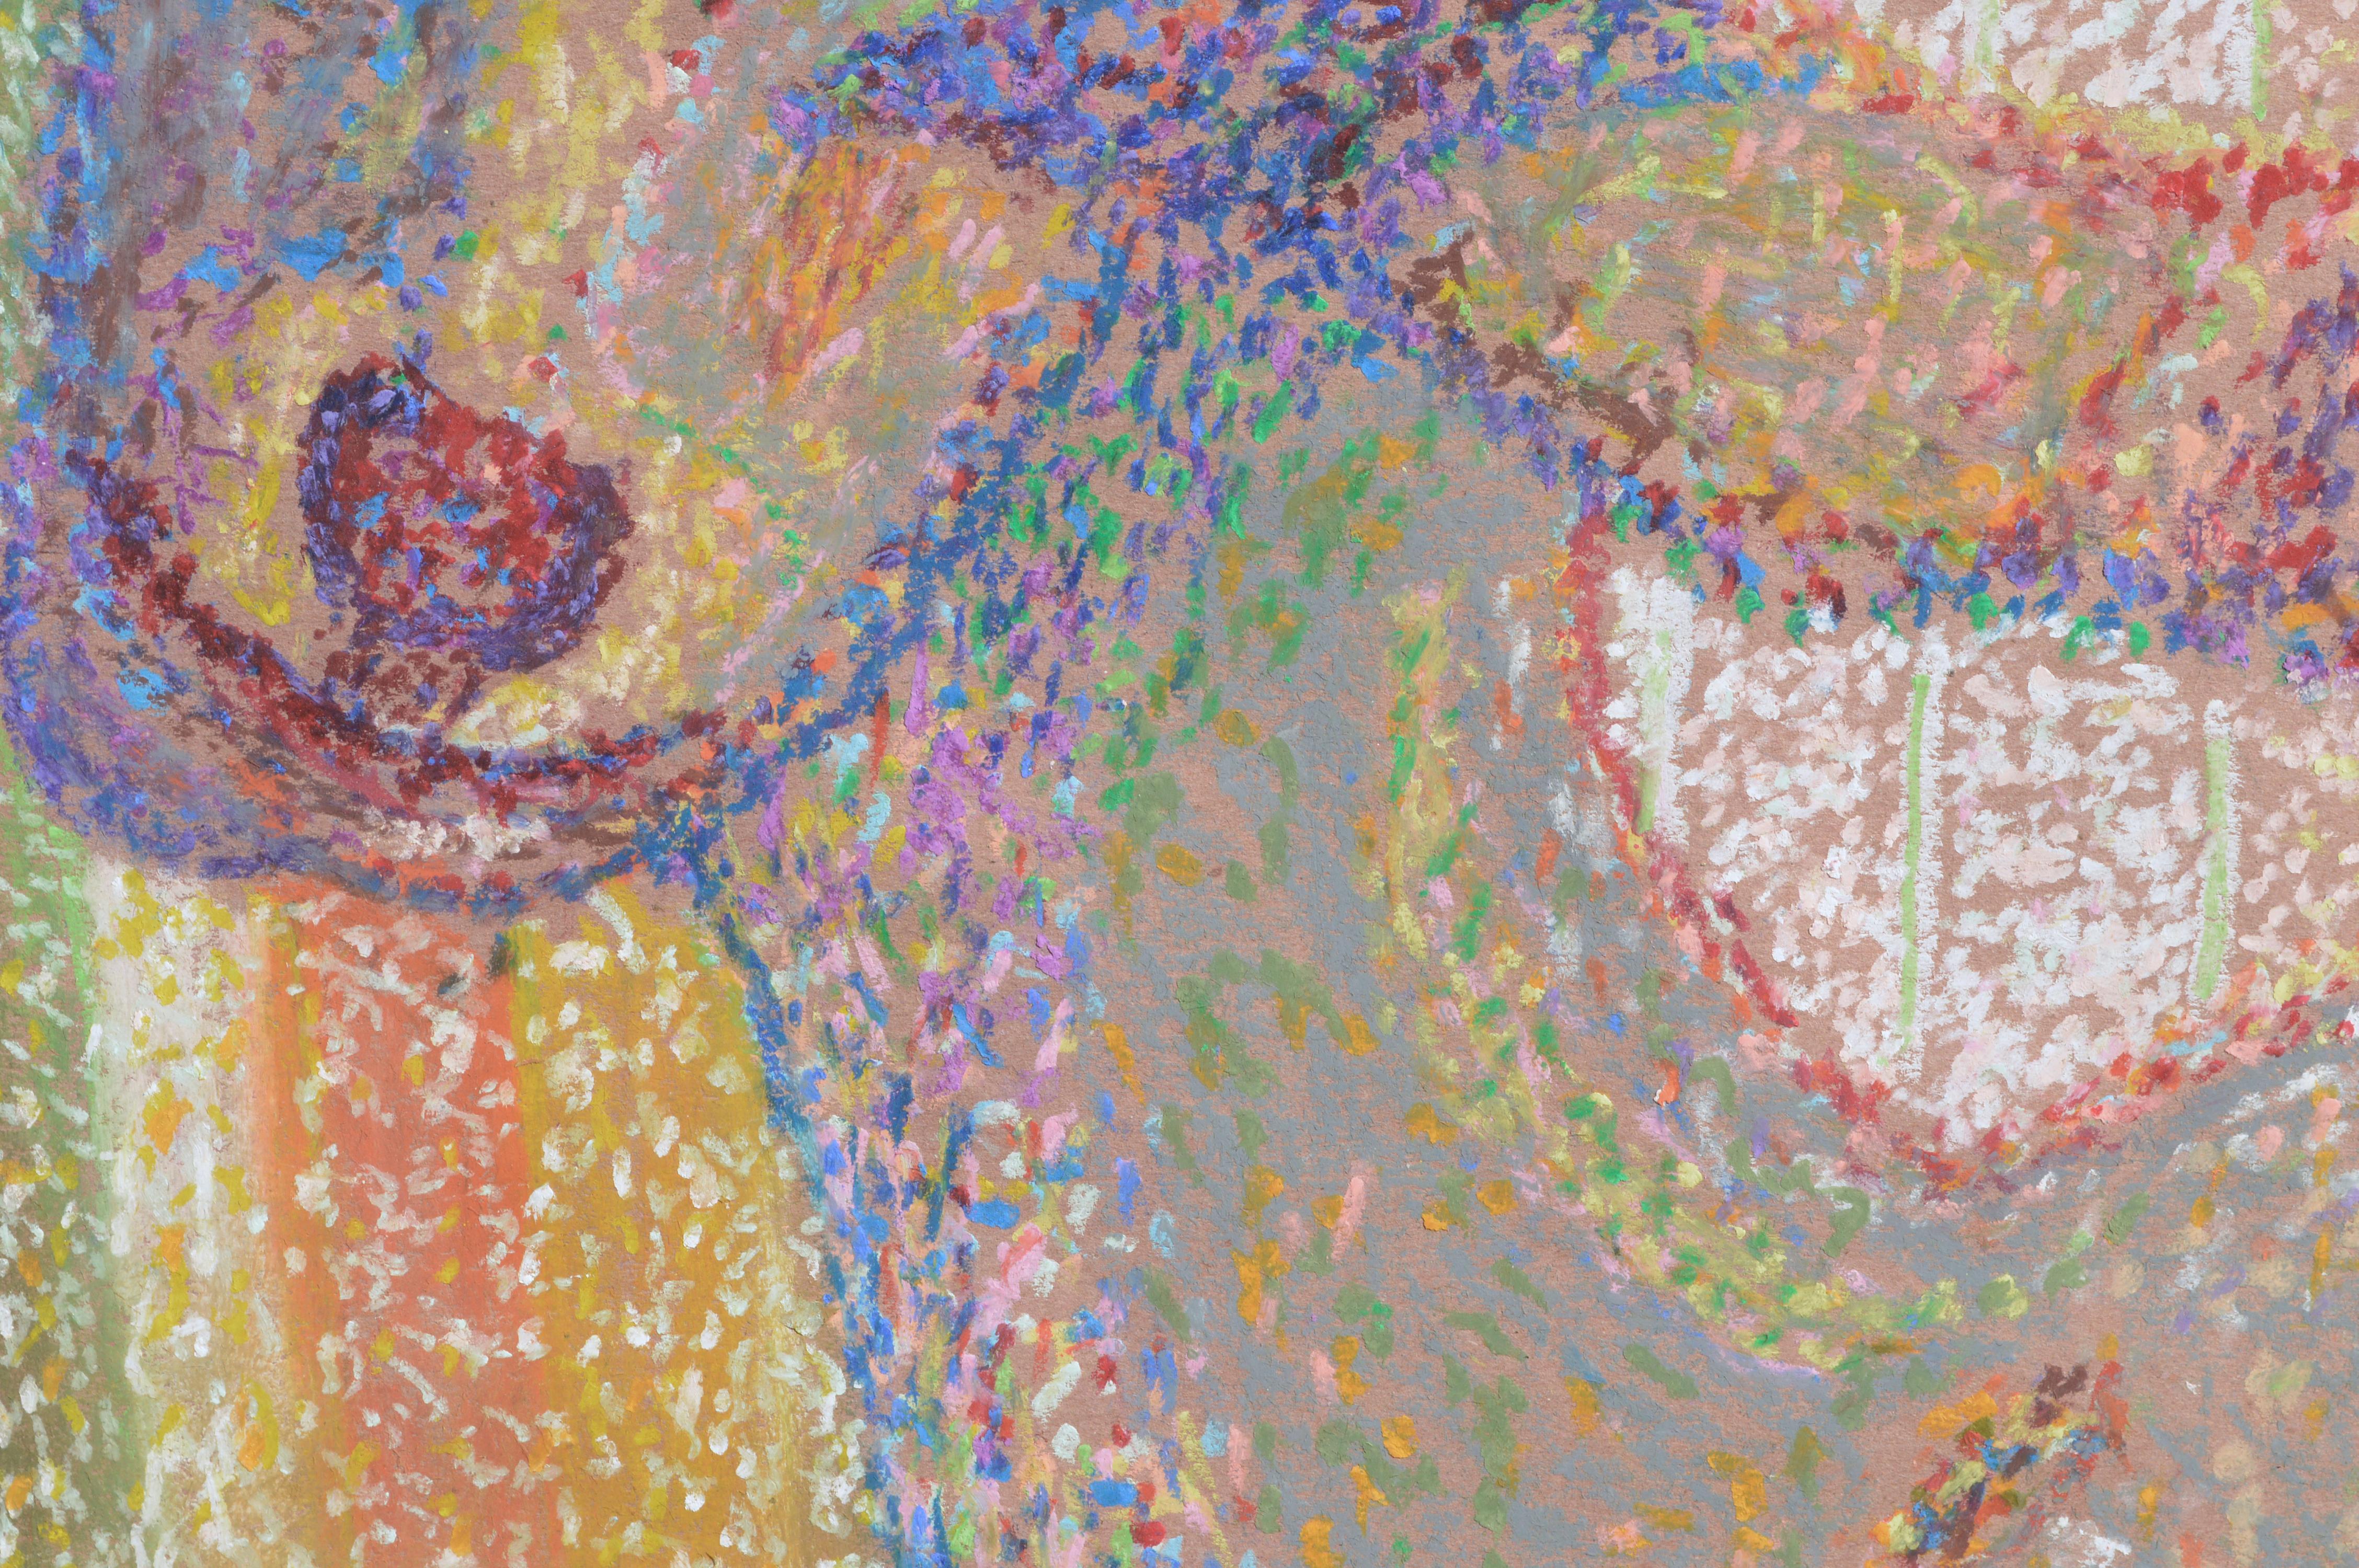 Charmantes Pastell einer farbenfrohen Ziege, komponiert im pointilistischen Stil mit Tausenden von winzigen bunten Punkten, von Karen Druker (Amerikanerin, 1945). Verso signiert 